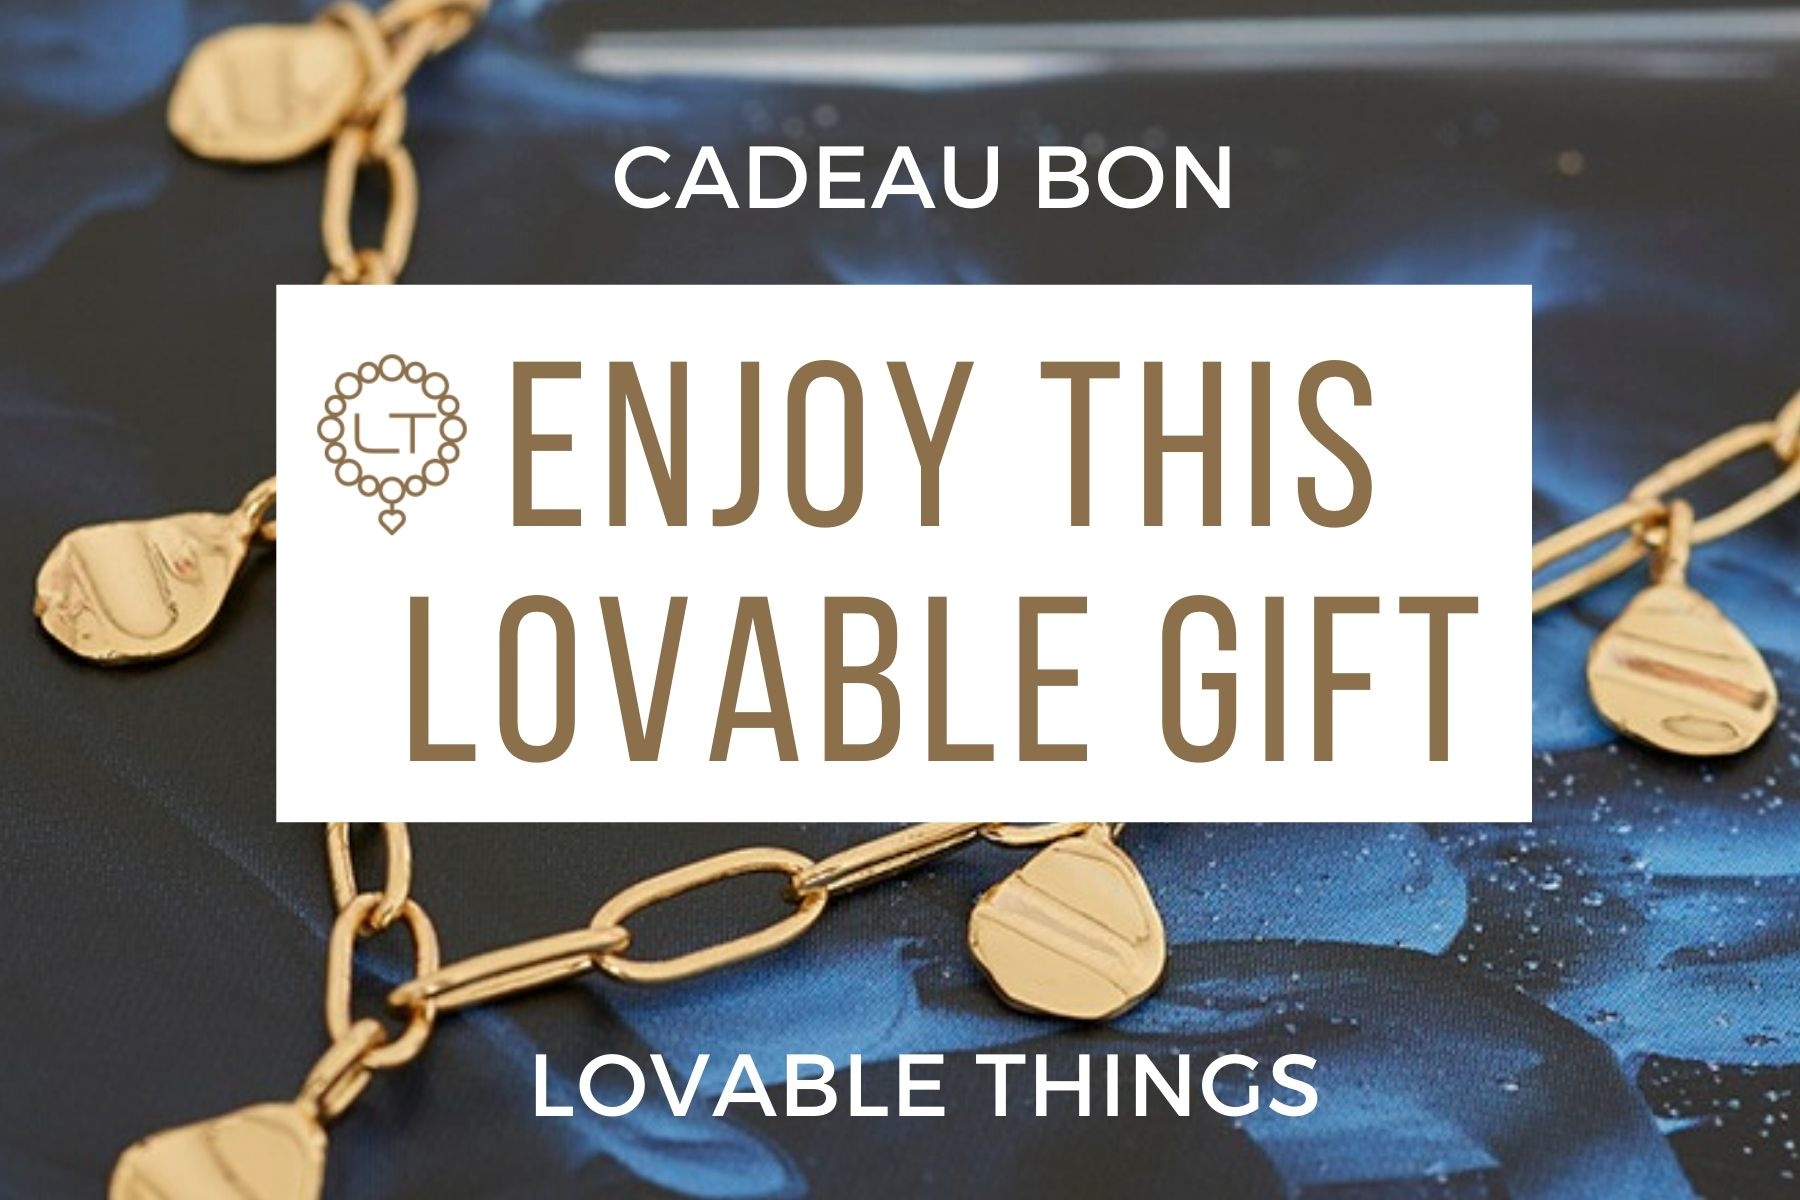 CADEAU BON | van THINGS is het perfecte cadeau - Lovable Things | Exclusieve Sieraden